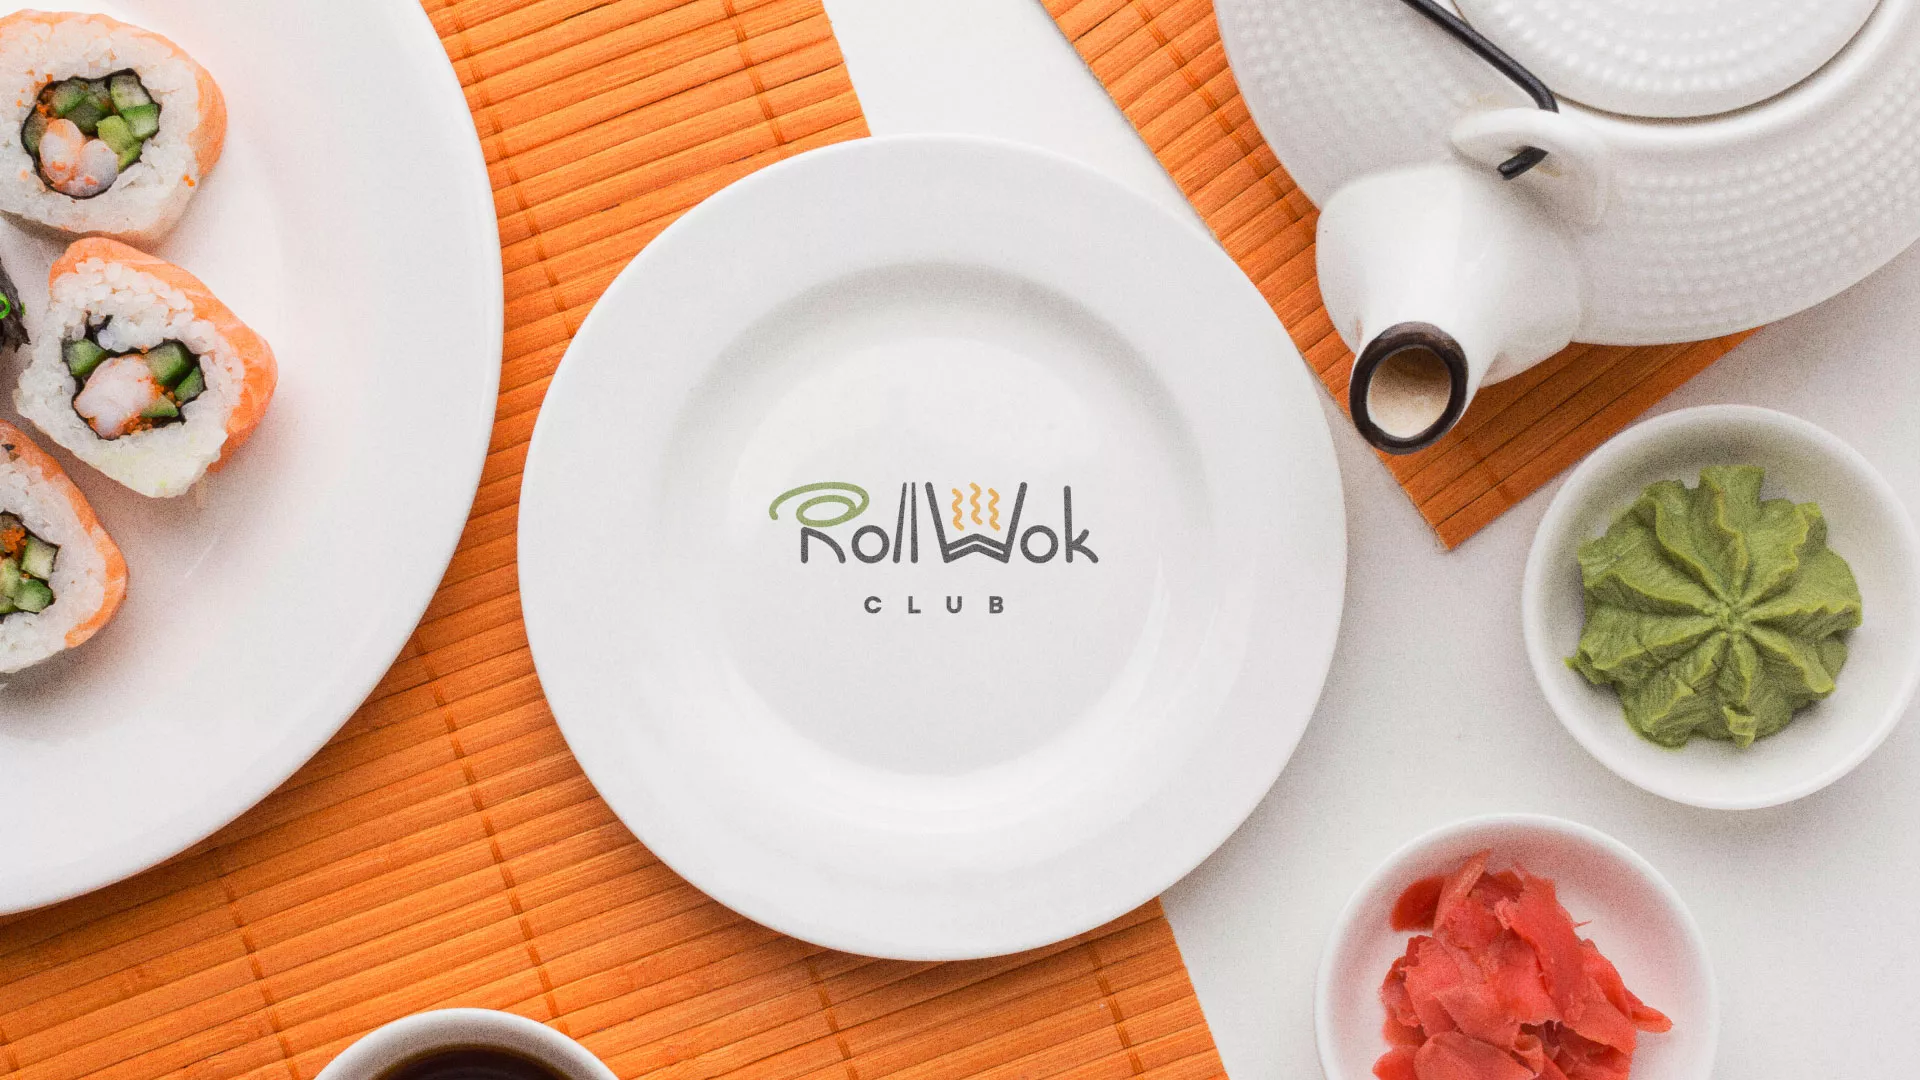 Разработка логотипа и фирменного стиля суши-бара «Roll Wok Club» в Гусиноозёрске